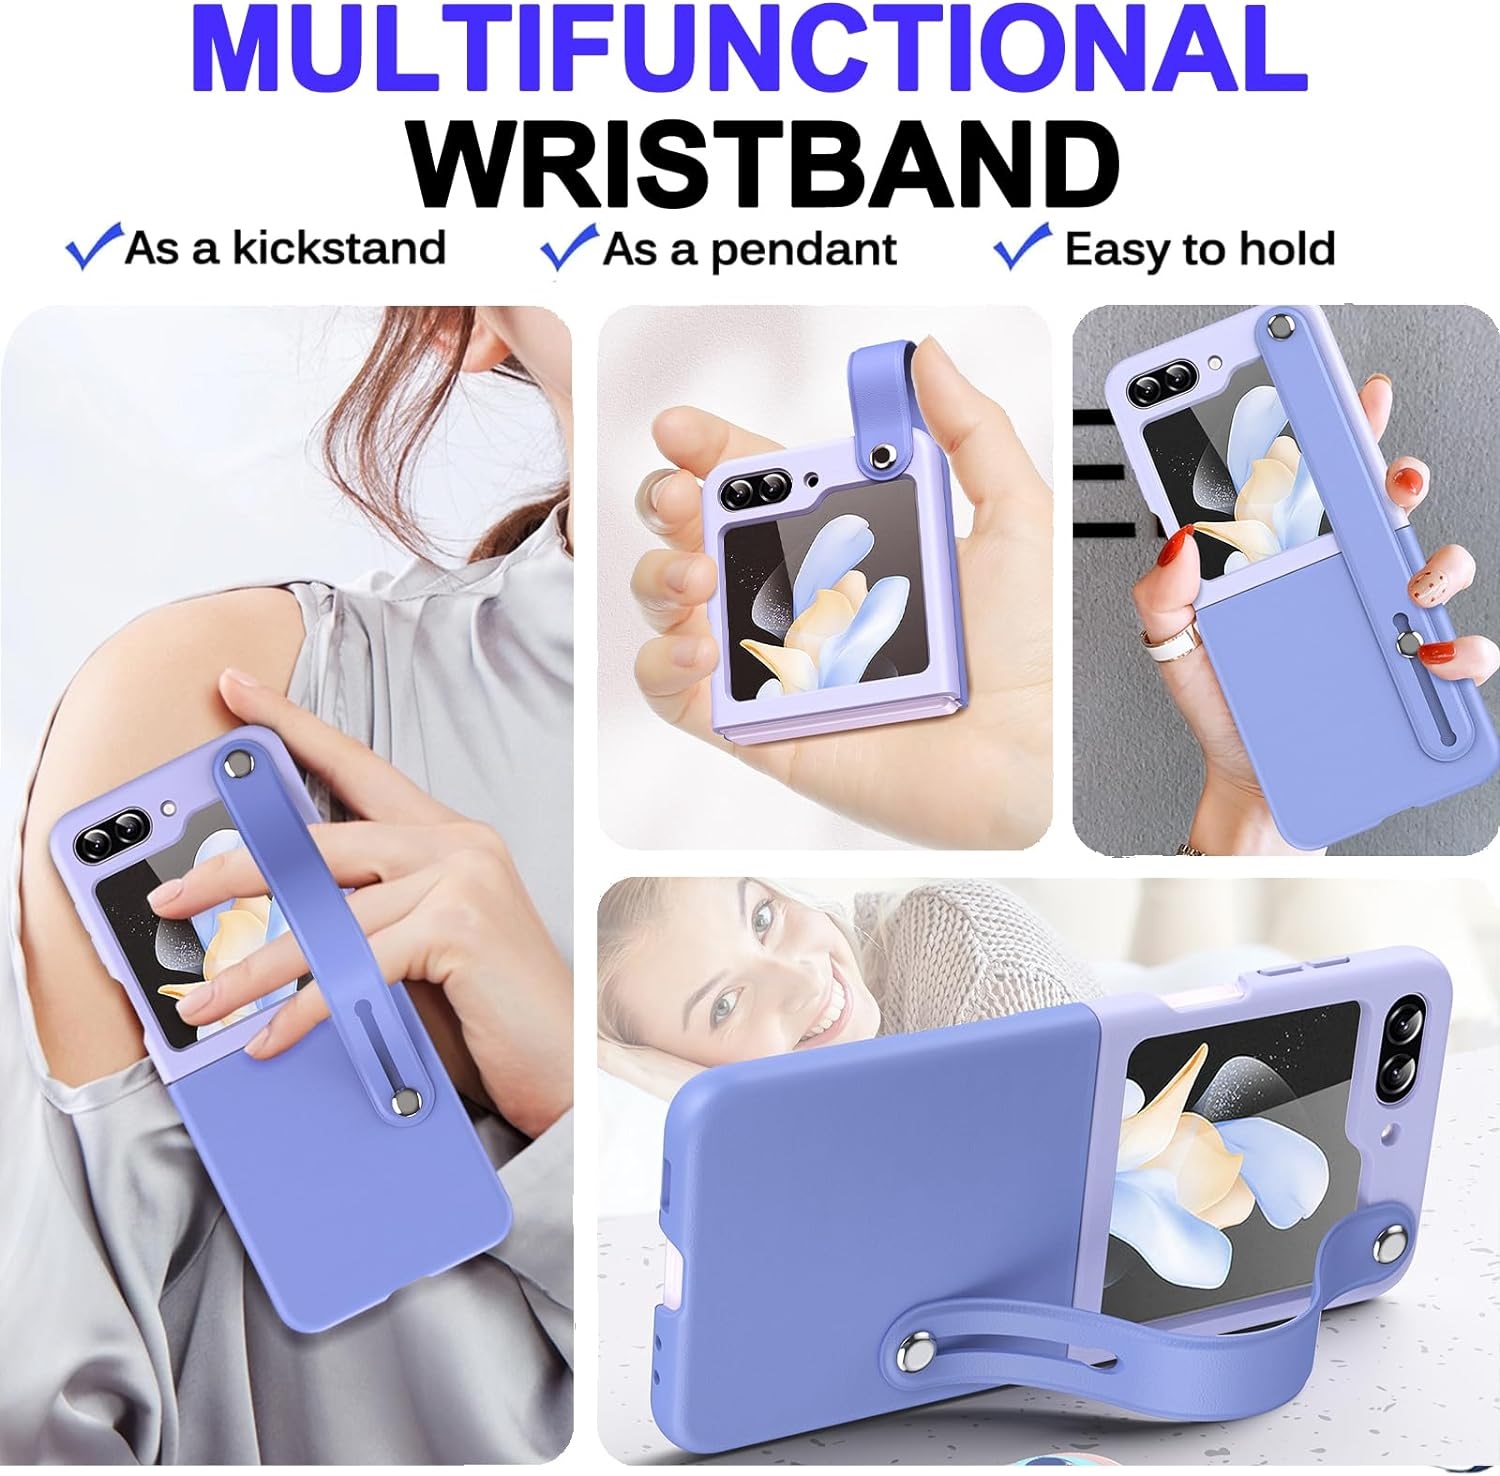 Ốp lưng đai đeo hand trap chống sốc cho Samsung Galaxy Z Flip 5 5G hiệu HOTCASE Wristband Stand Phone Case - chất liệu cao cấp, thiết kế thời trang sang trọng có đai đeo tay an toàn - Hàng nhập khẩu